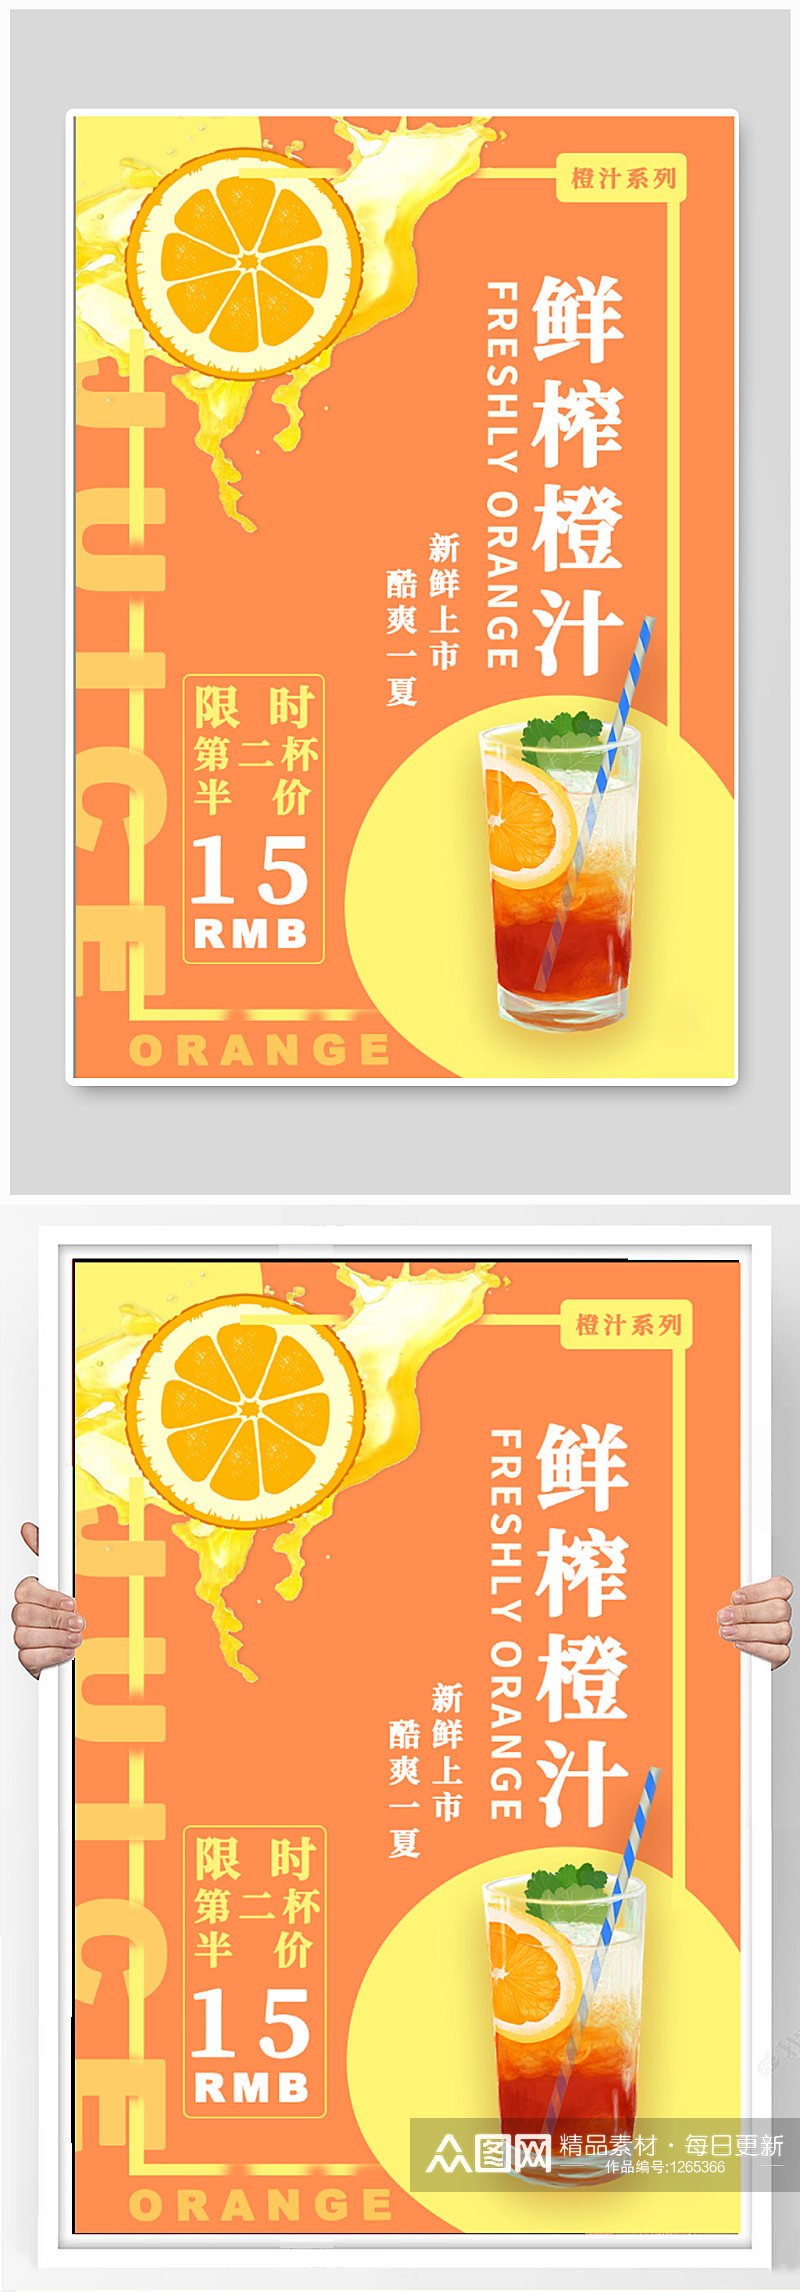 鲜榨橙汁饮品海报素材